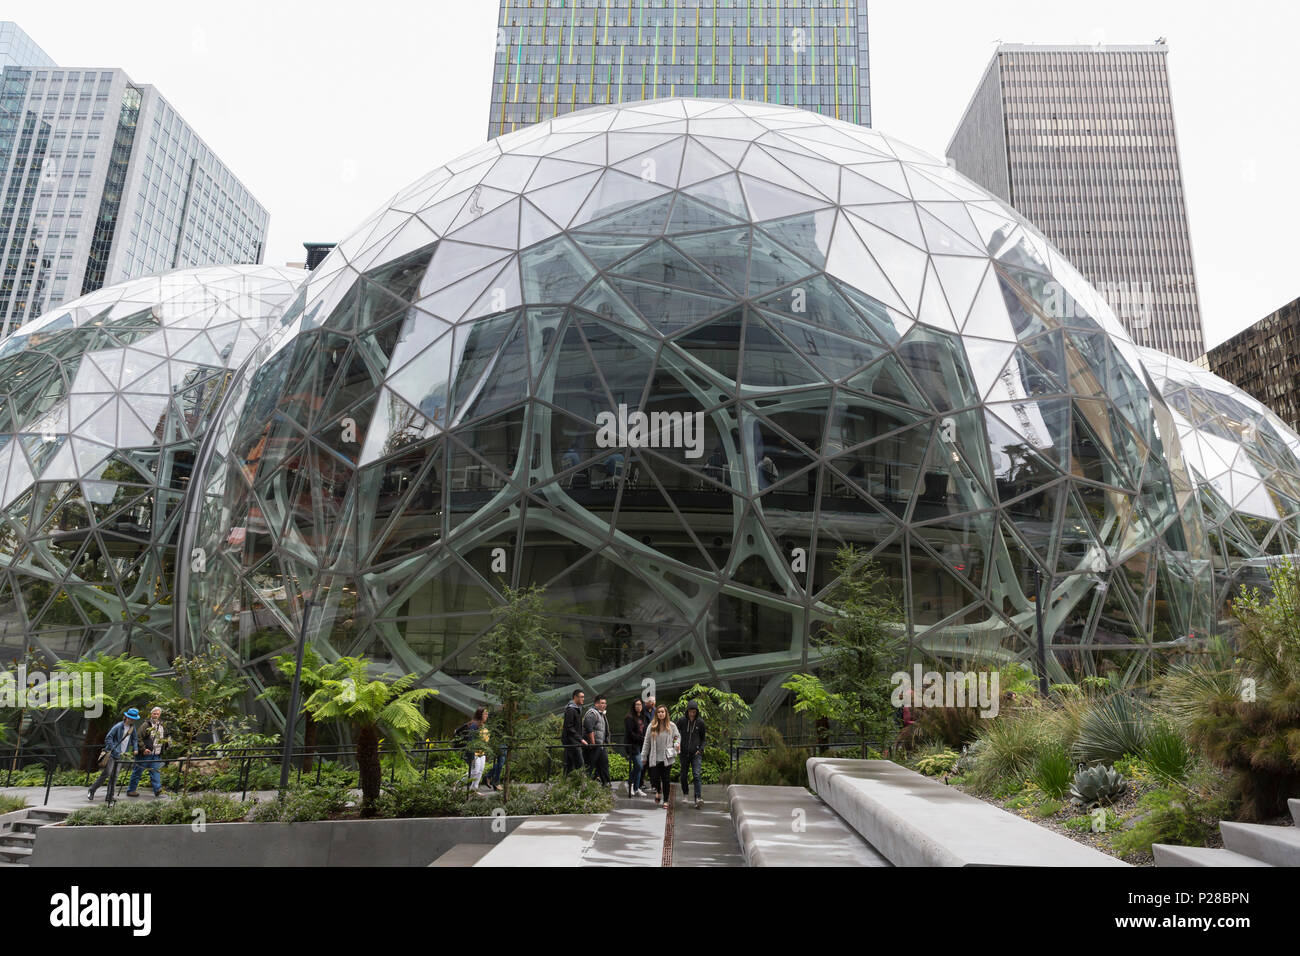 Seattle, Washington: Der Amazon Sphären bei Amazon HQ. Die geodätischen Strukturen Haus Platz für Büros, Einzelhandel und einen botanischen Garten. Stockfoto